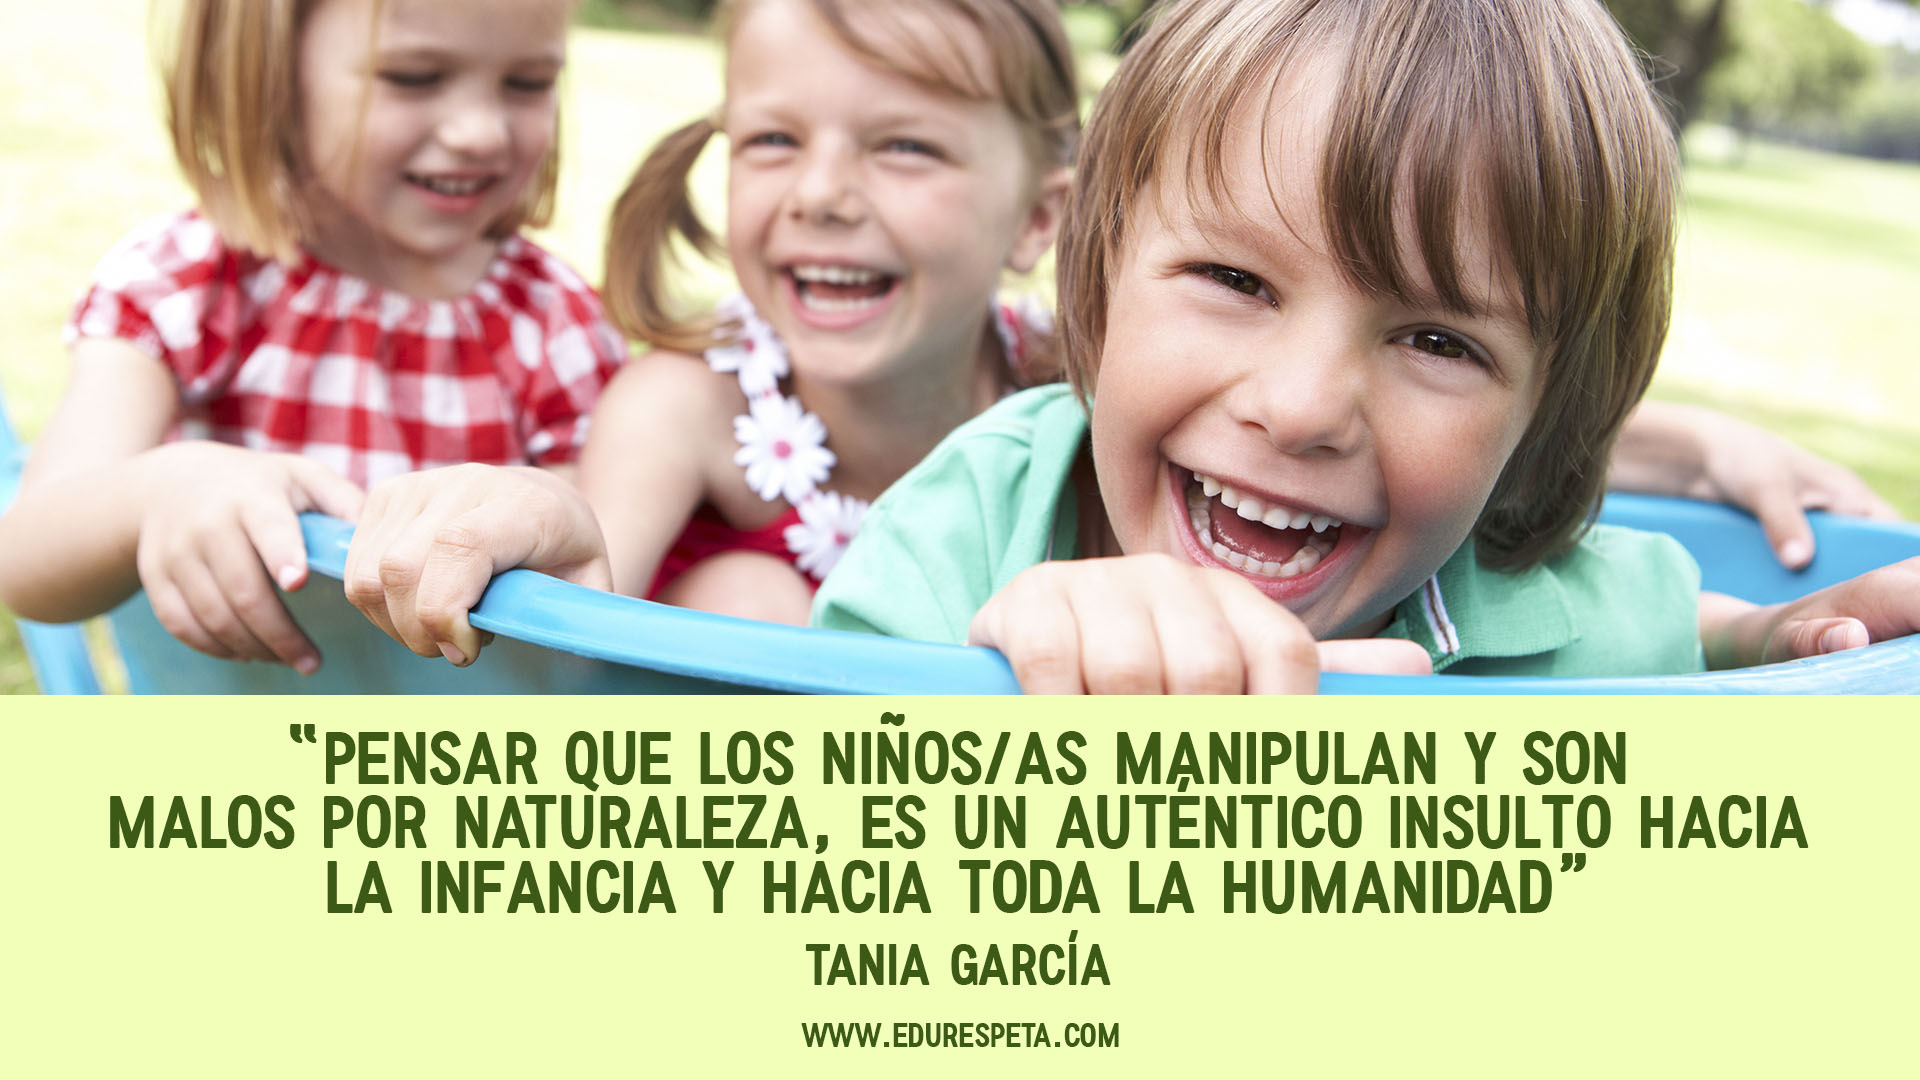 Pensar que los niños/as manipulan y son malos por naturaleza, es un auténtico insulto hacia la infancia y hacia toda la humanidad. Tania García